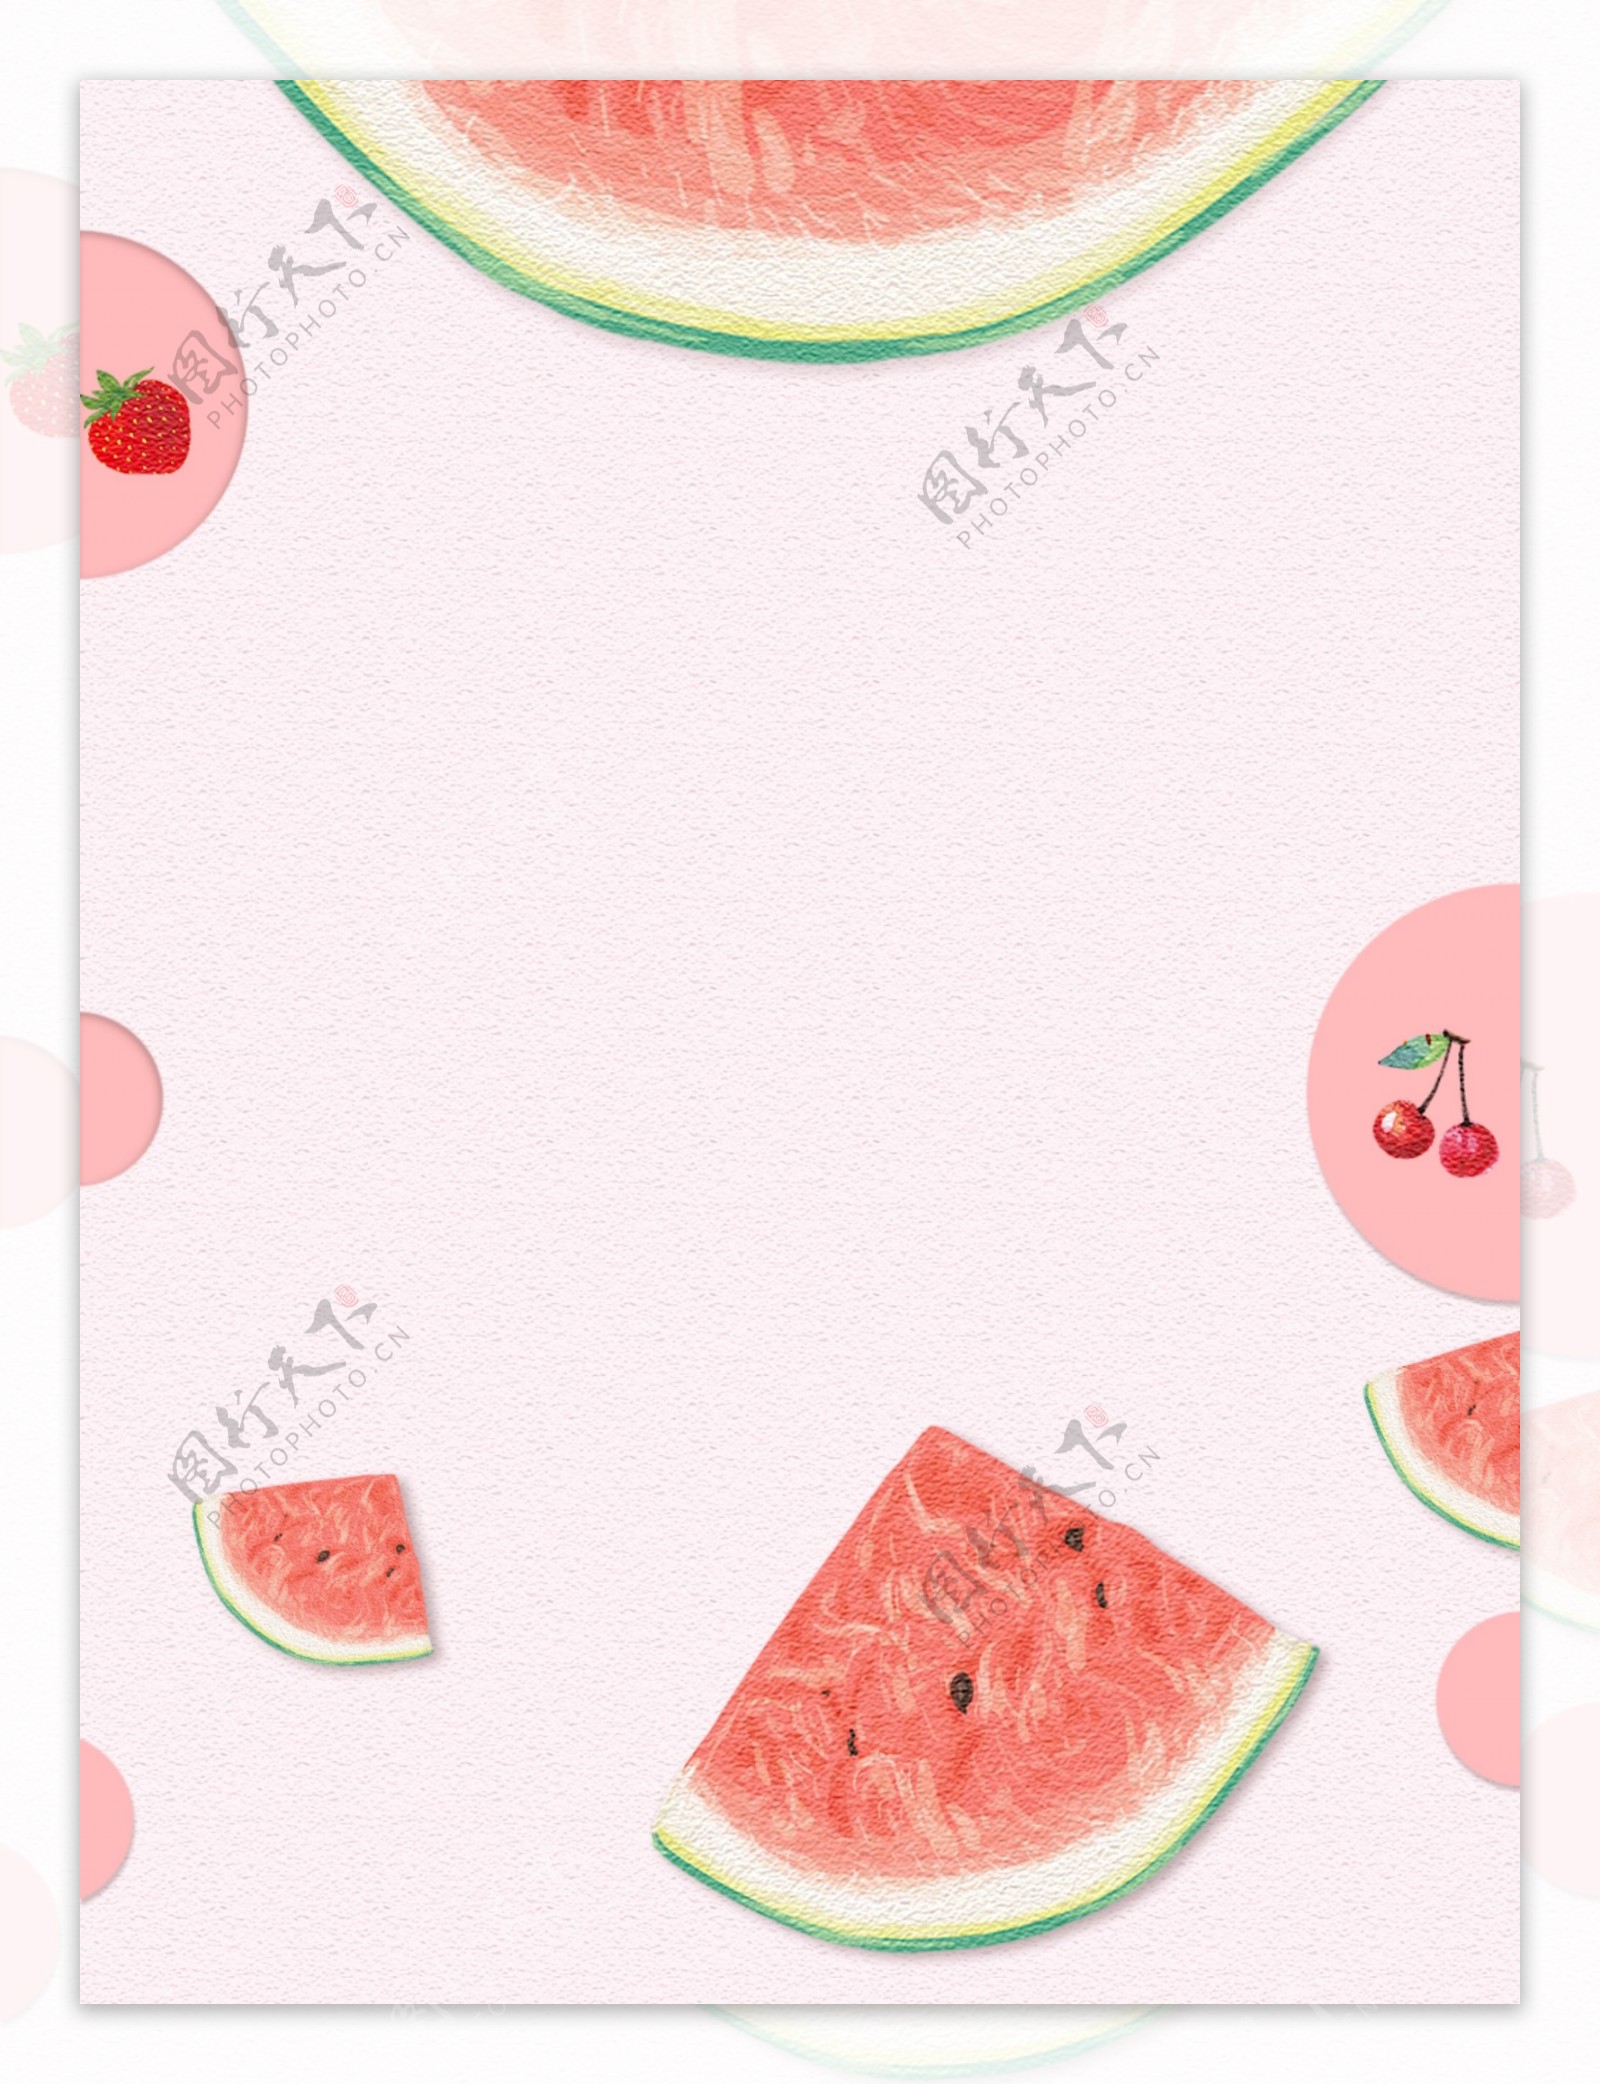 原创水果西瓜草莓樱桃背景